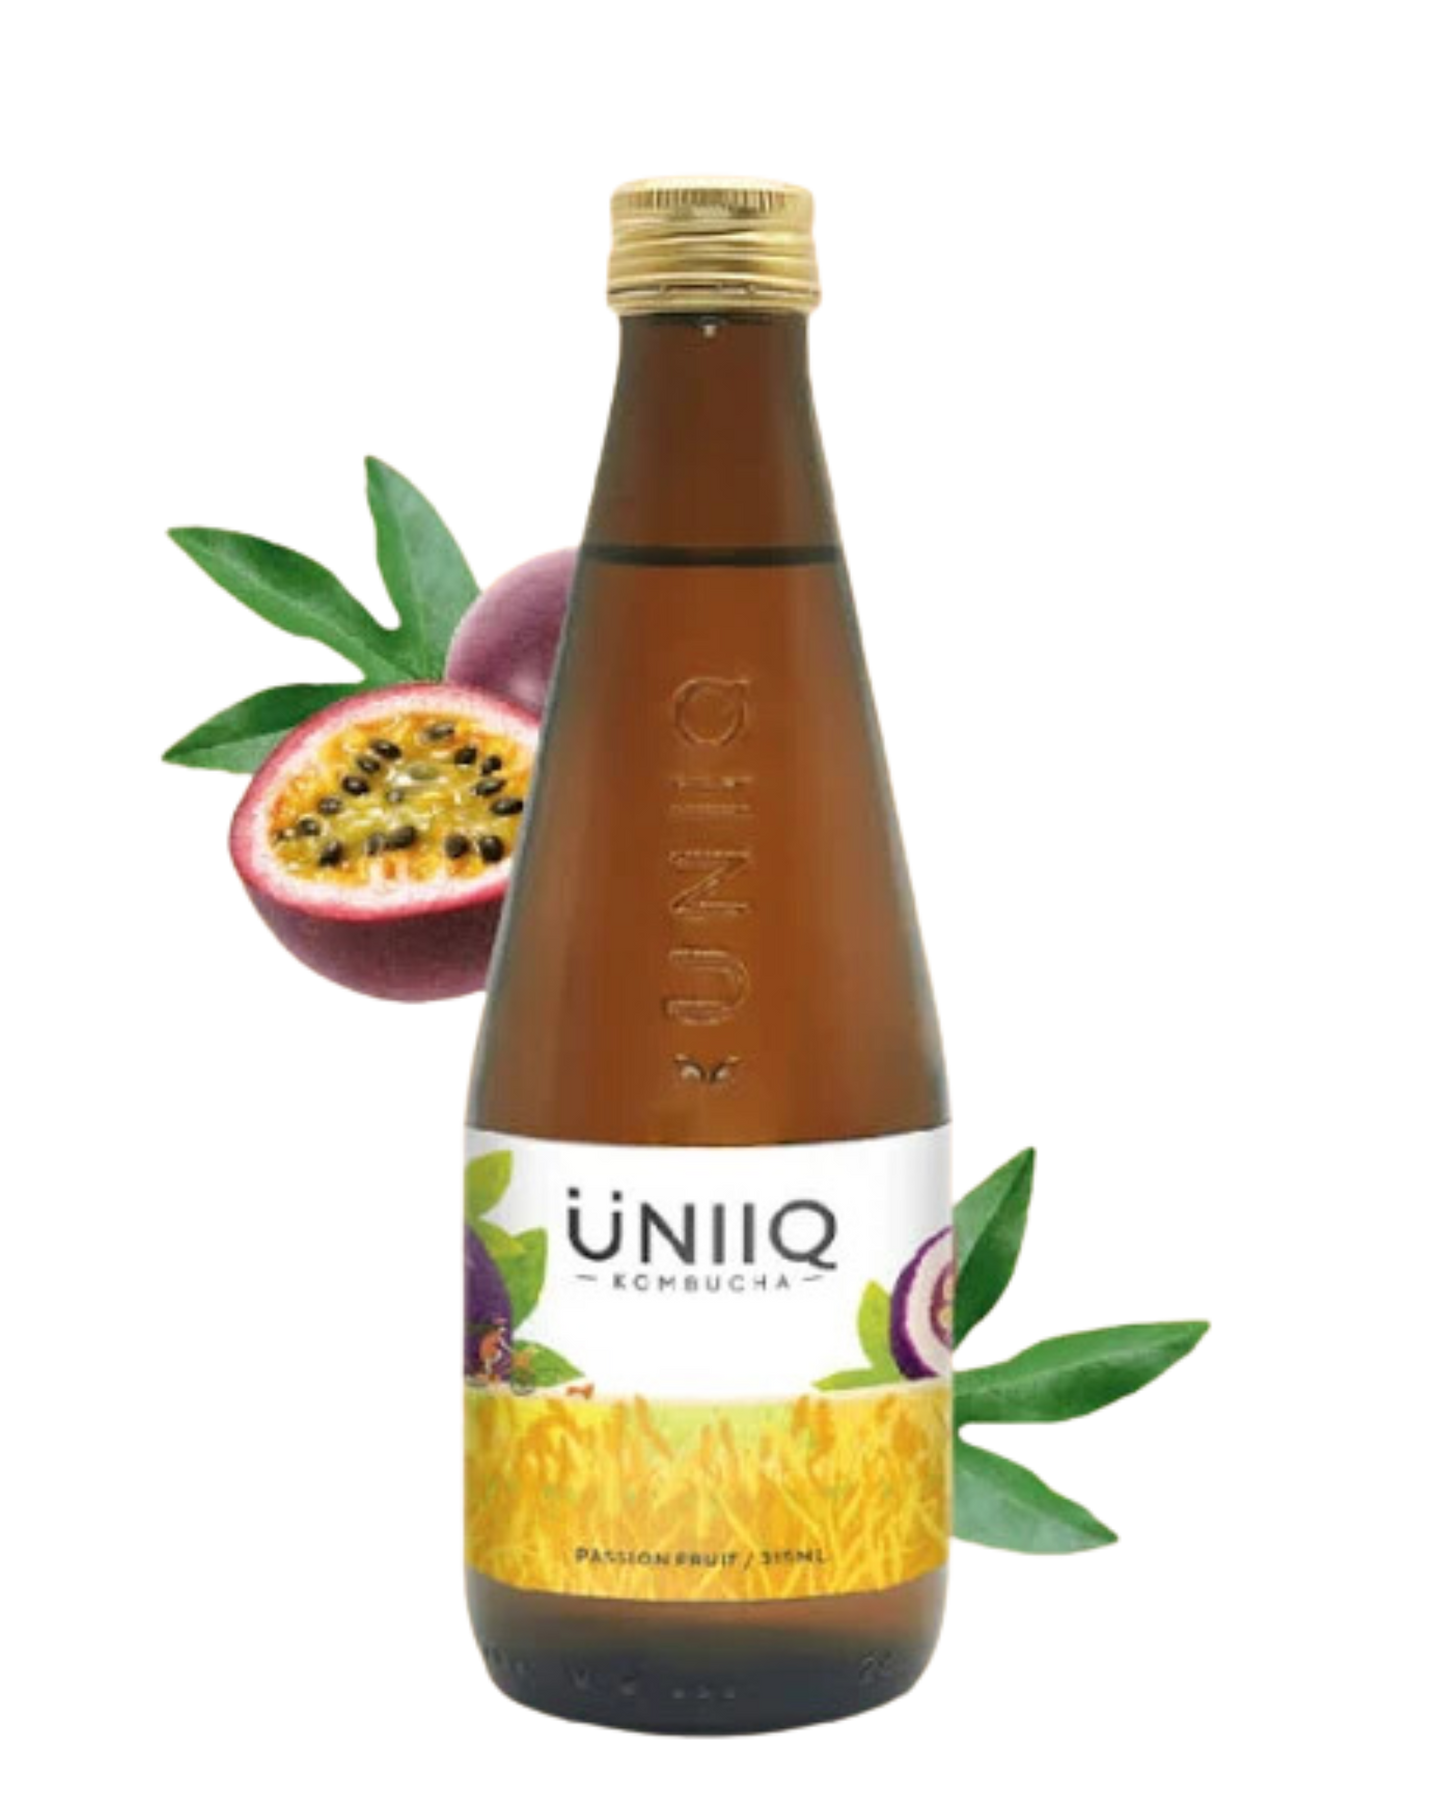 Uniiq Passion Fruit Kombucha 4x315ml - Premium Premium Mixer from Uniiq - Shop now at Whiskery